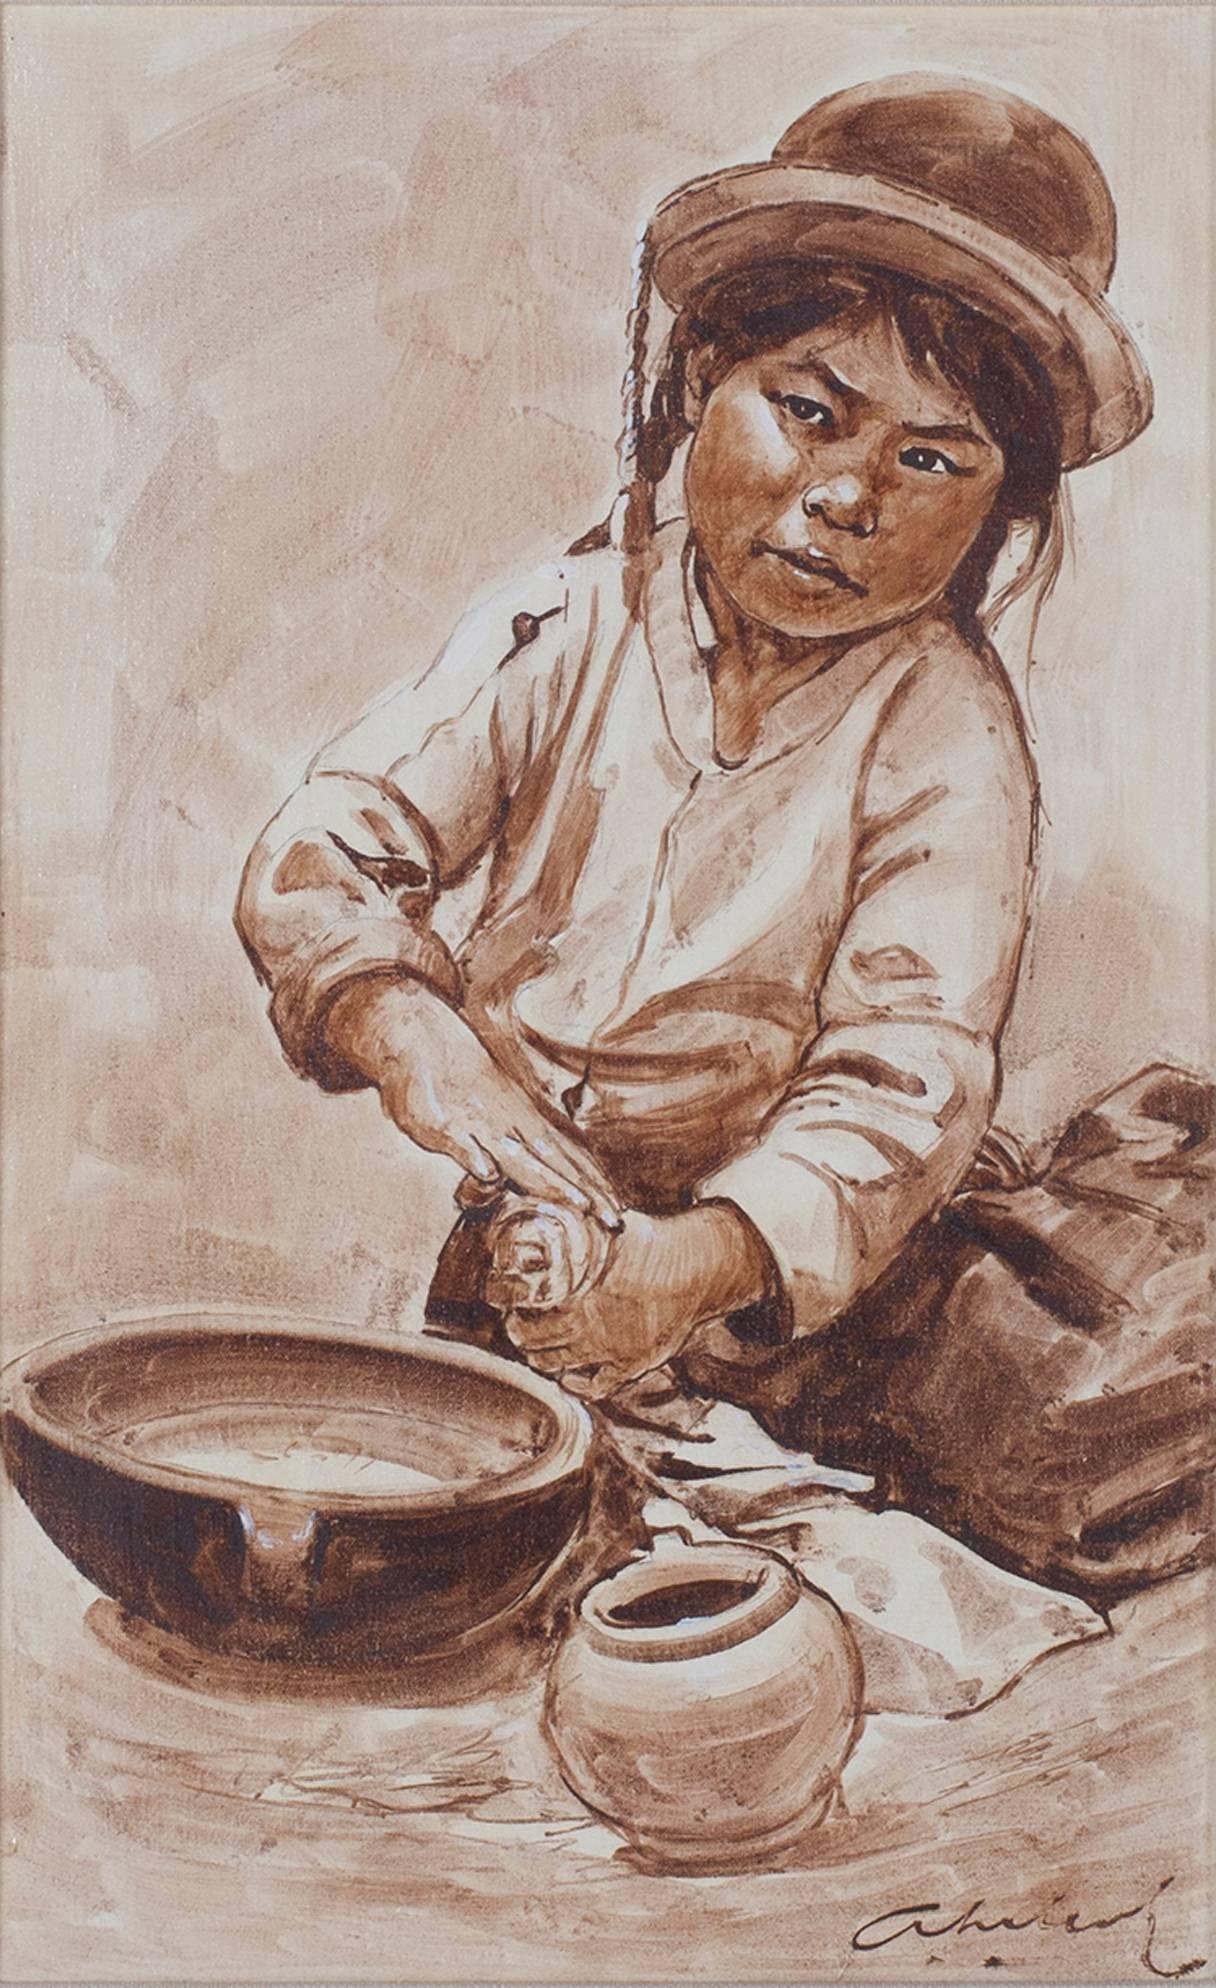 « Nina Alfarera (Poterie d'artisanat d'enfant - Puno) - Puno », huile sur toile signée par Velazquez - Painting de Abelardo Marquez Velazquez